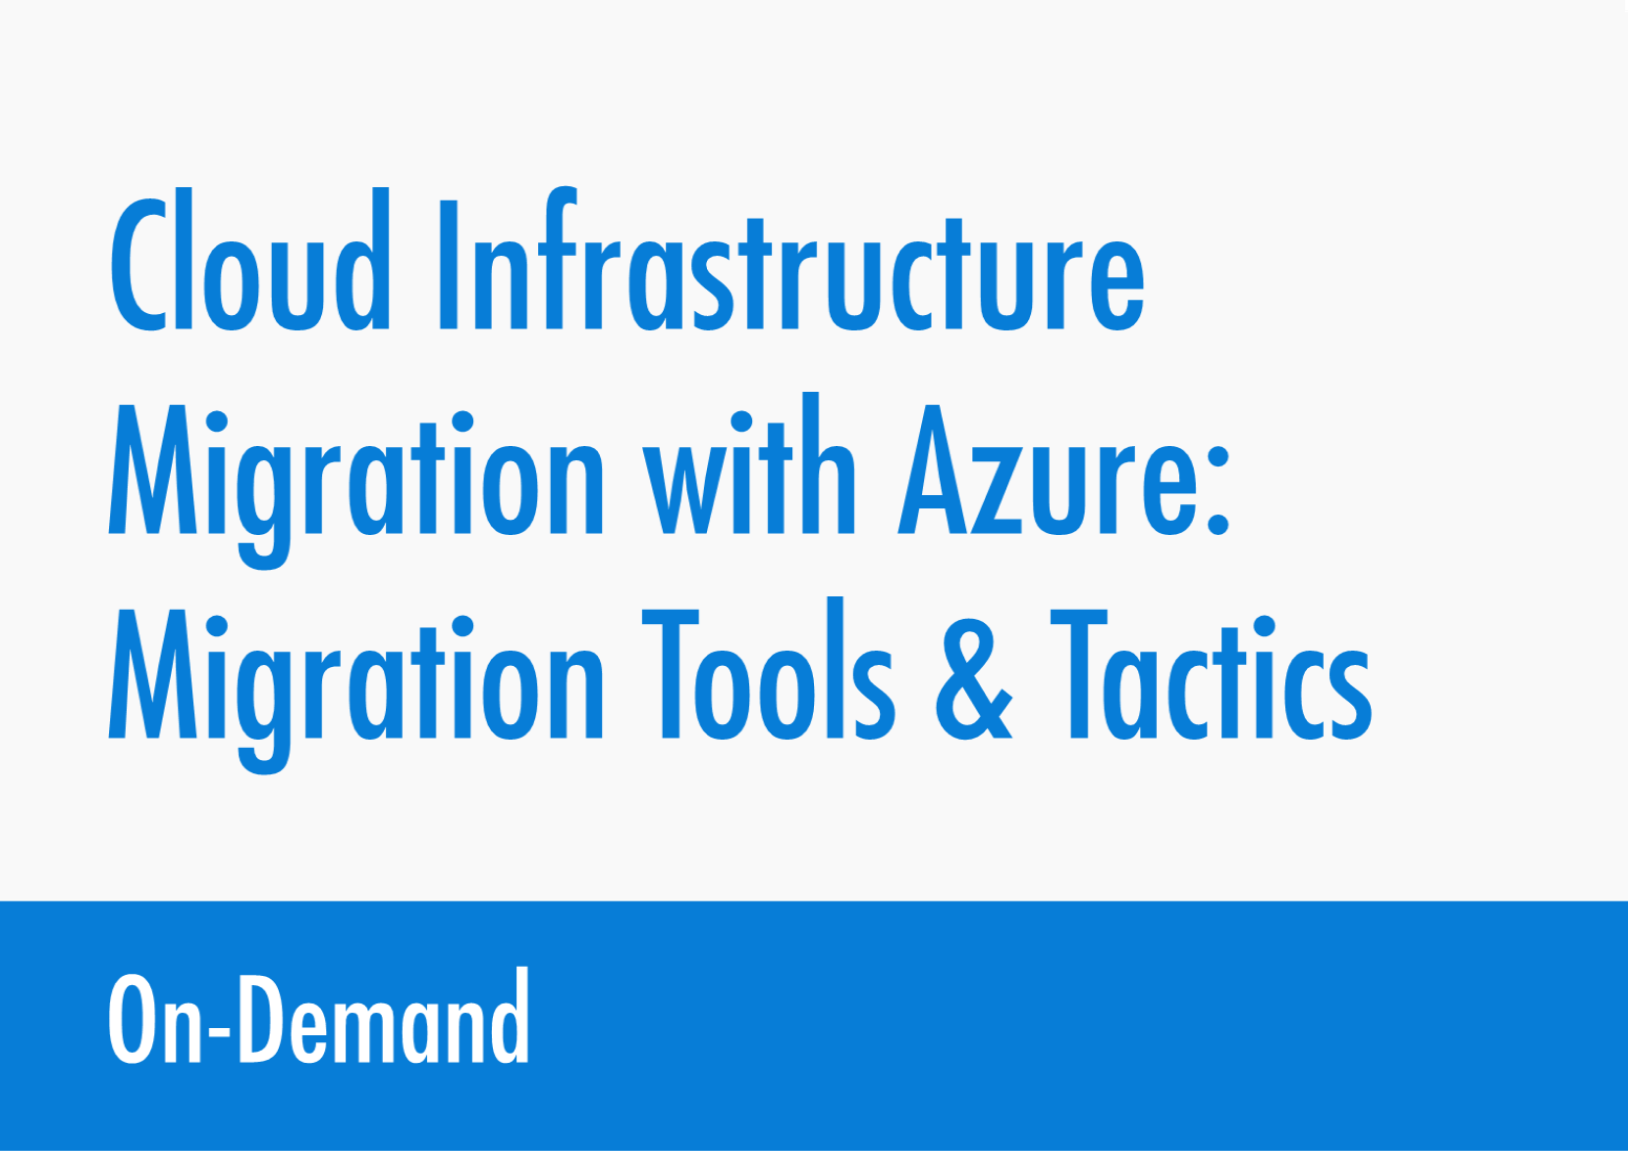 Cloud Migration with Azure - Migration Tools & Tactics